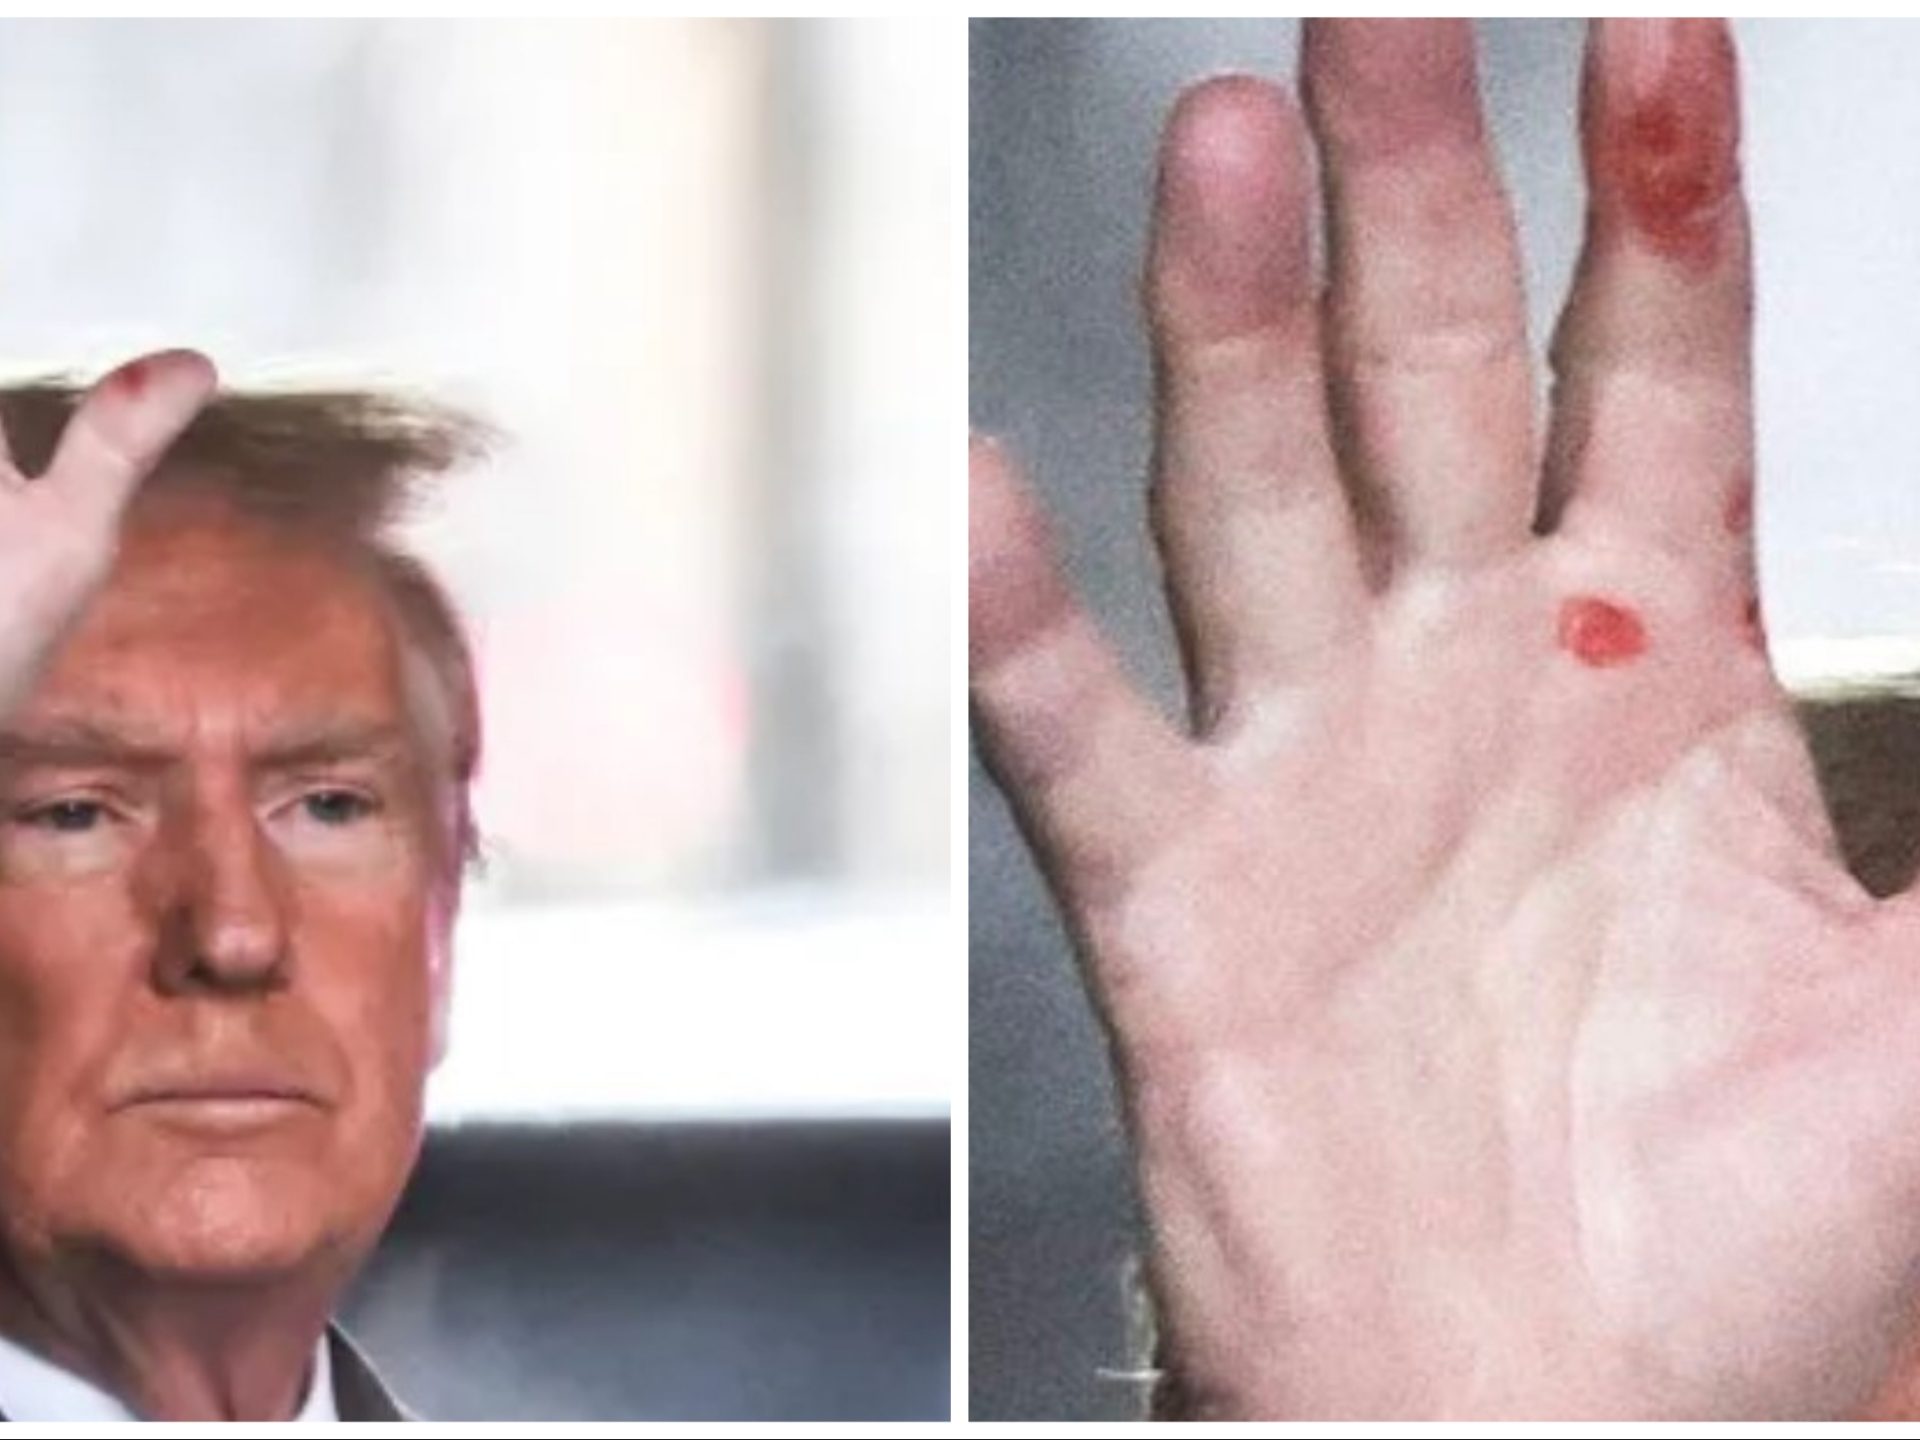 "Trump ha la sifilide": la mano macchiata aprono dubbi sulla sua salute